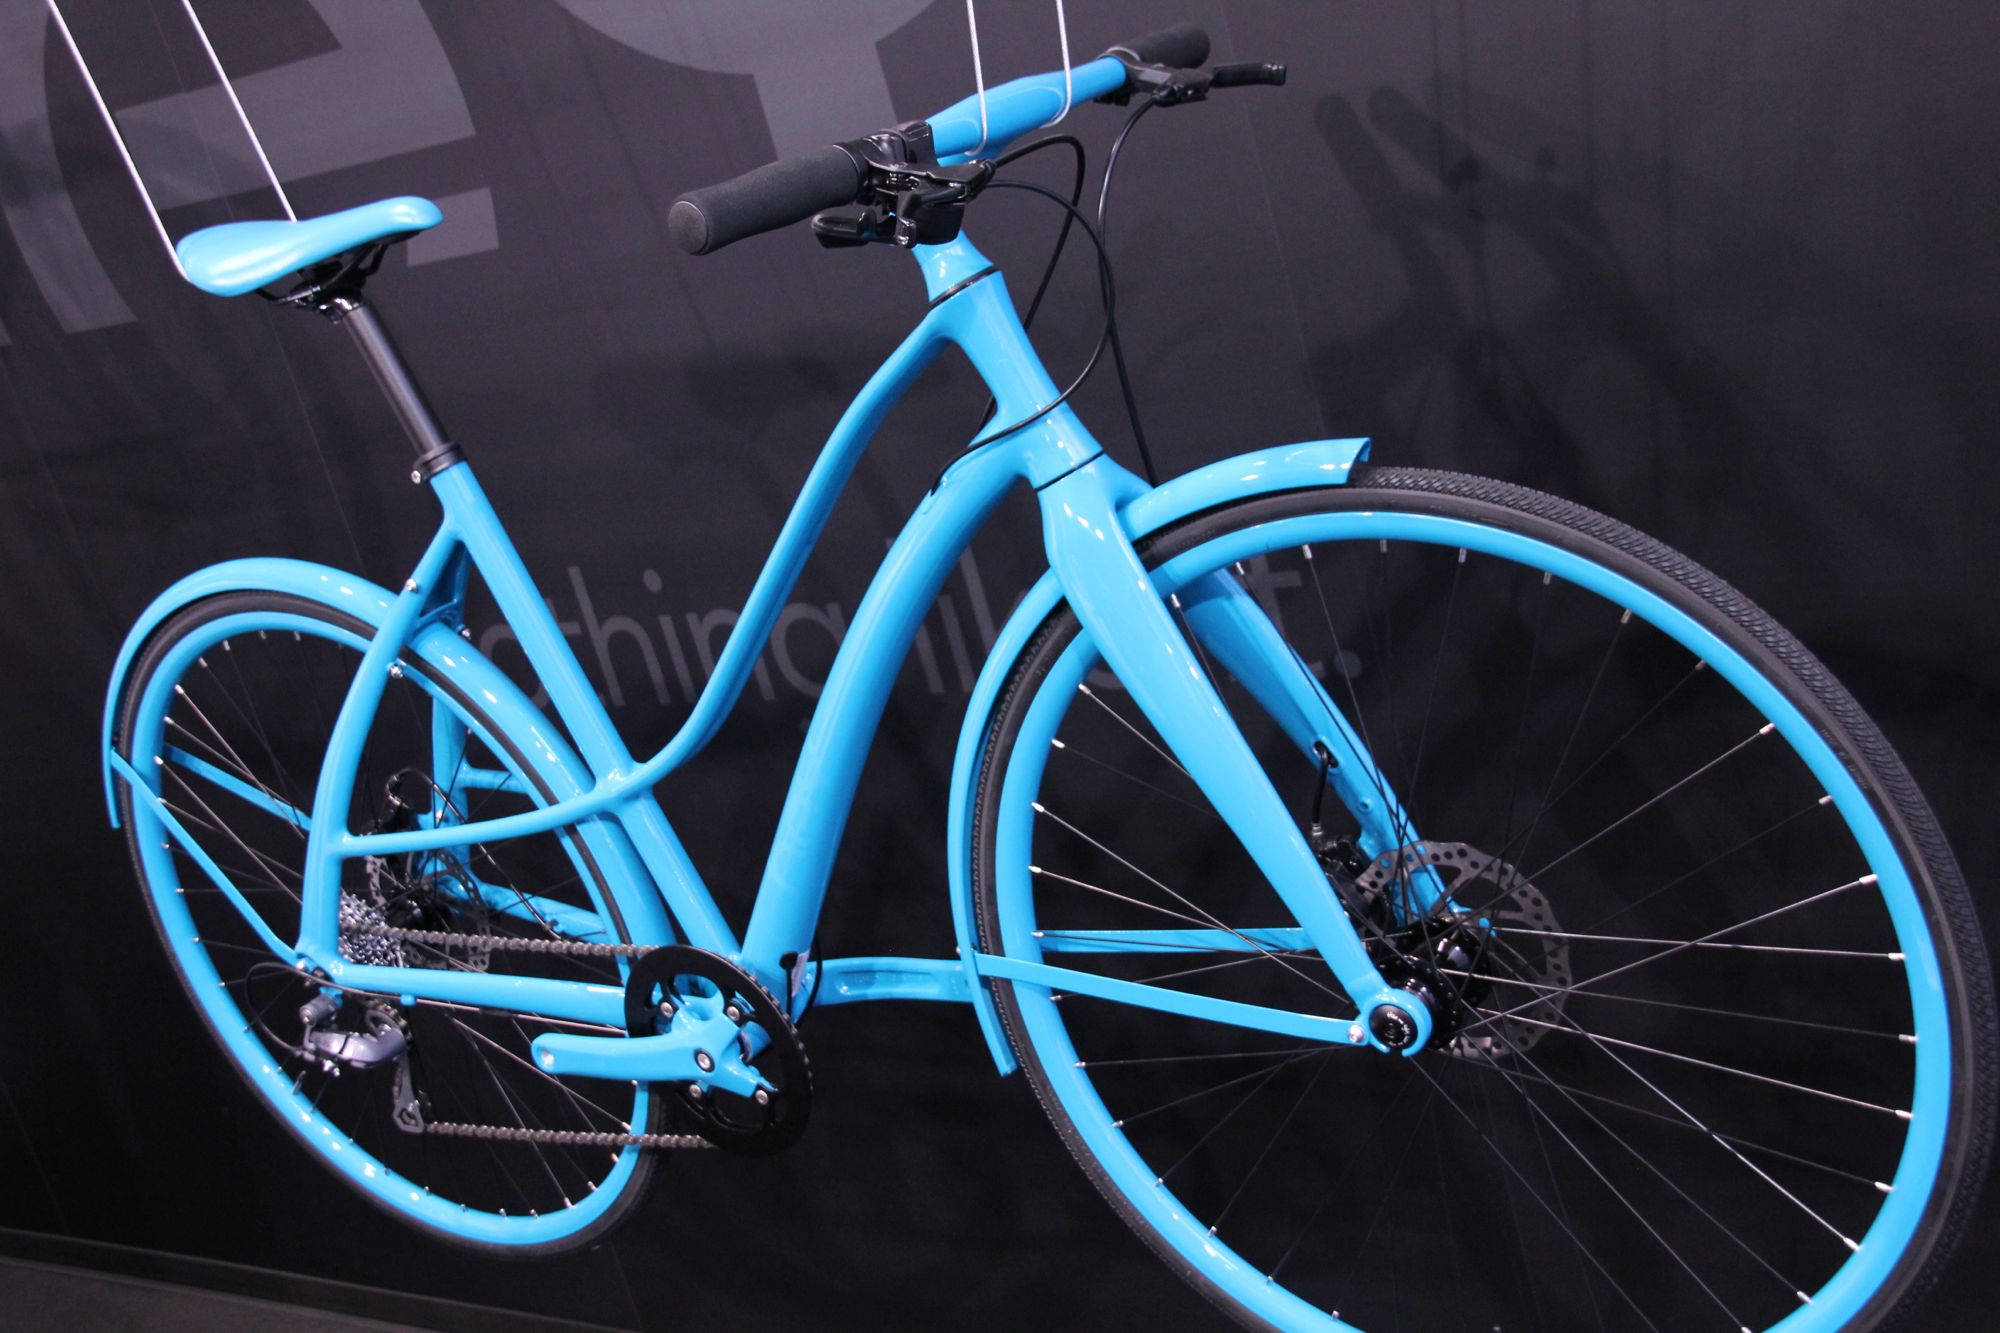 teal blue bike